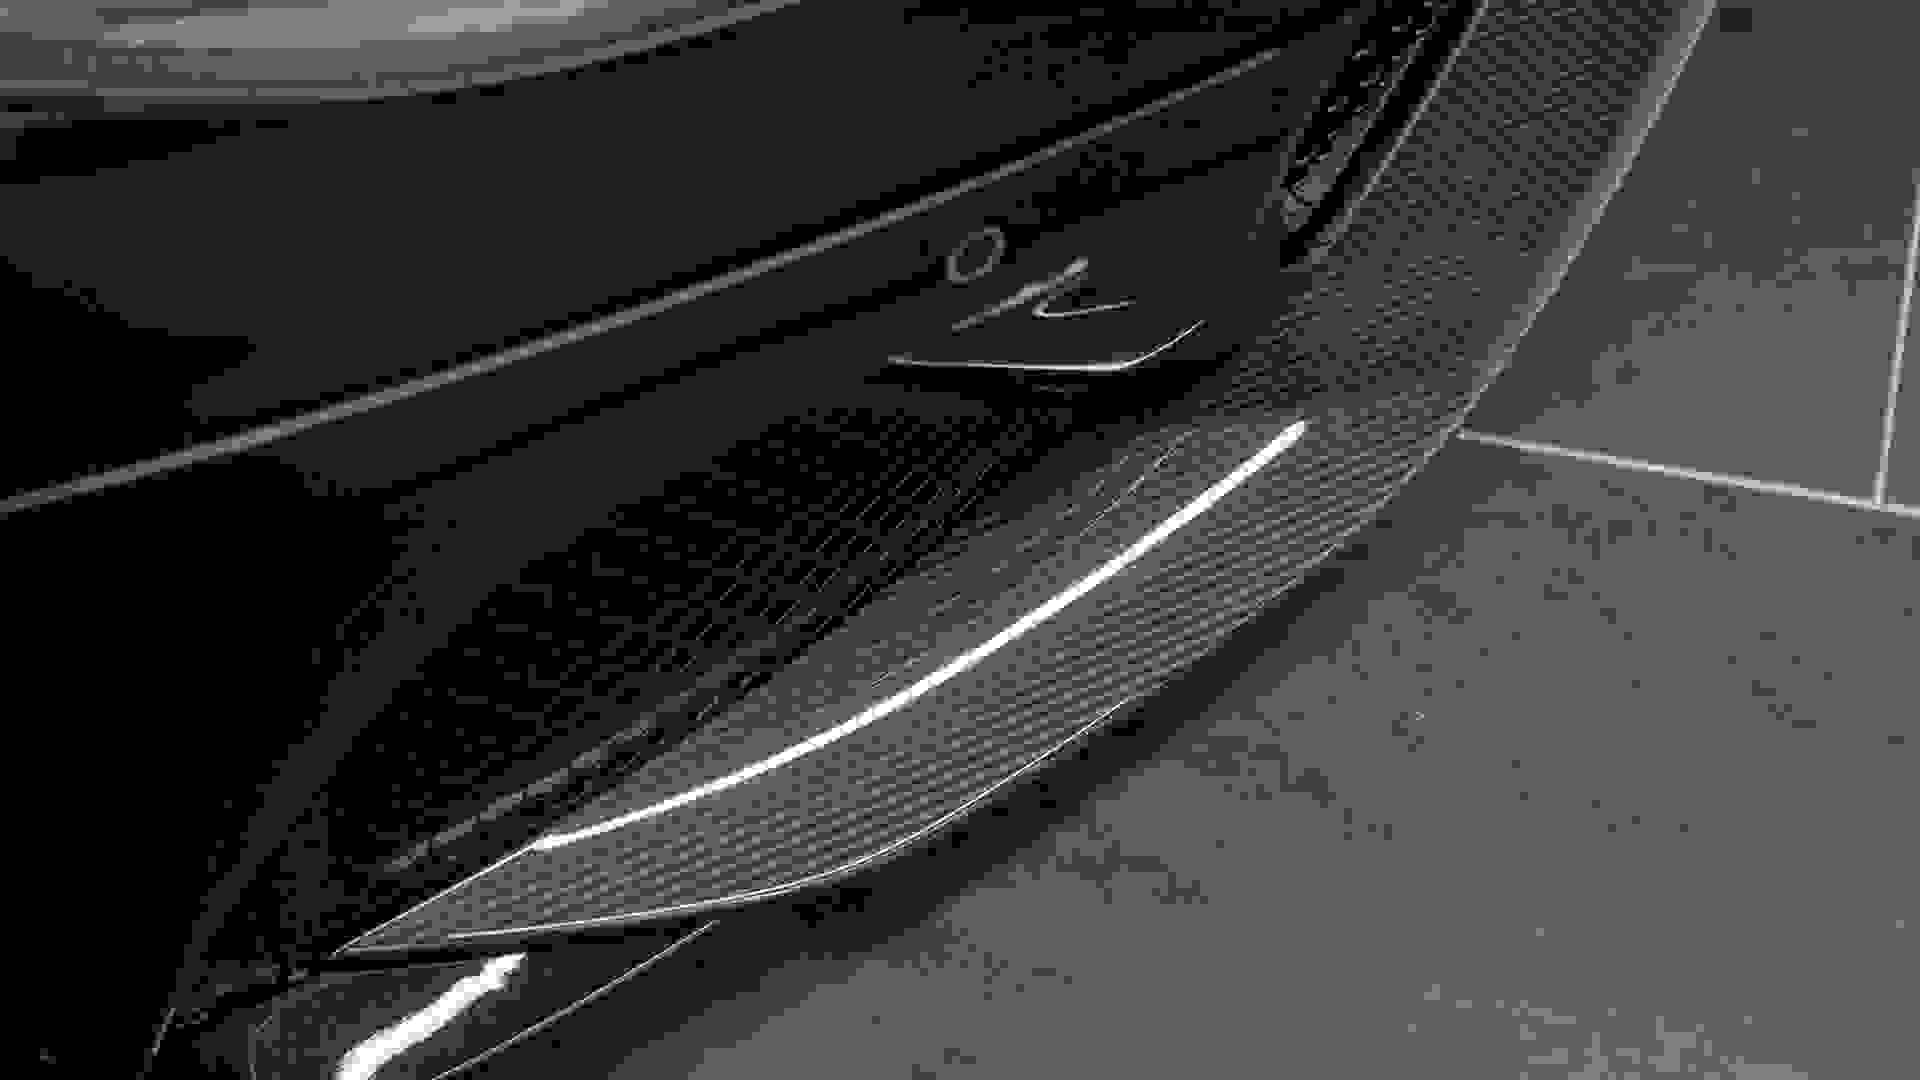 Aston Martin DBS SUPERLEGGERA Photo 8c4dc17a-78ef-416a-8ec2-06575cc3a0ee.jpg